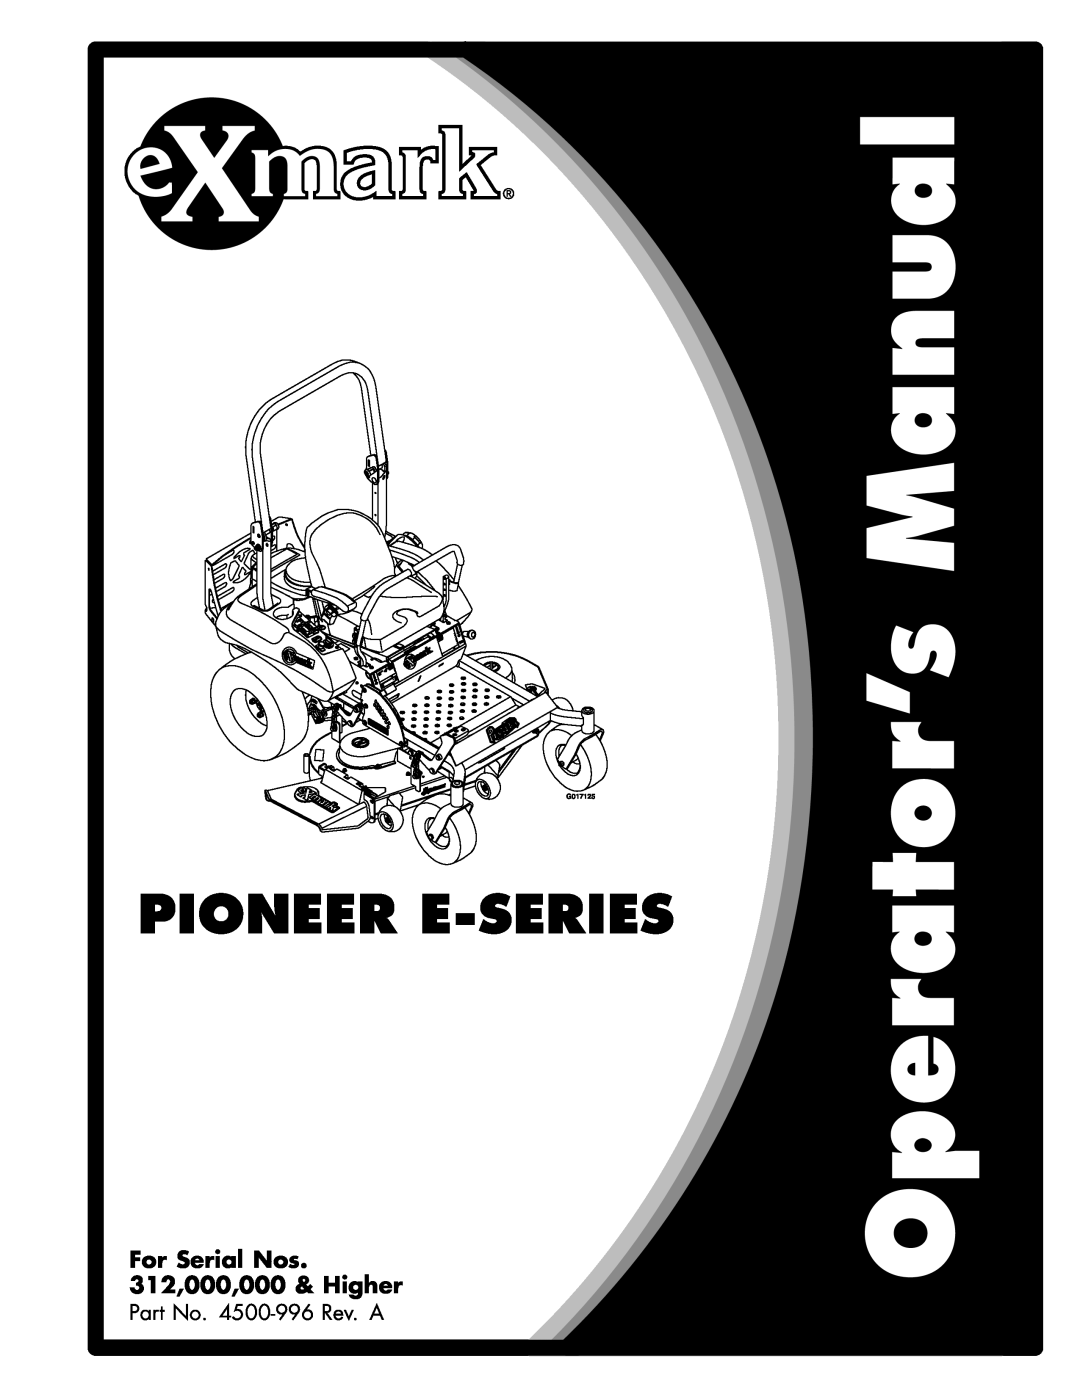 Exmark 4500-996 Rev A manual Pioneer E-Series, For Serial Nos 312,000,000 & Higher 